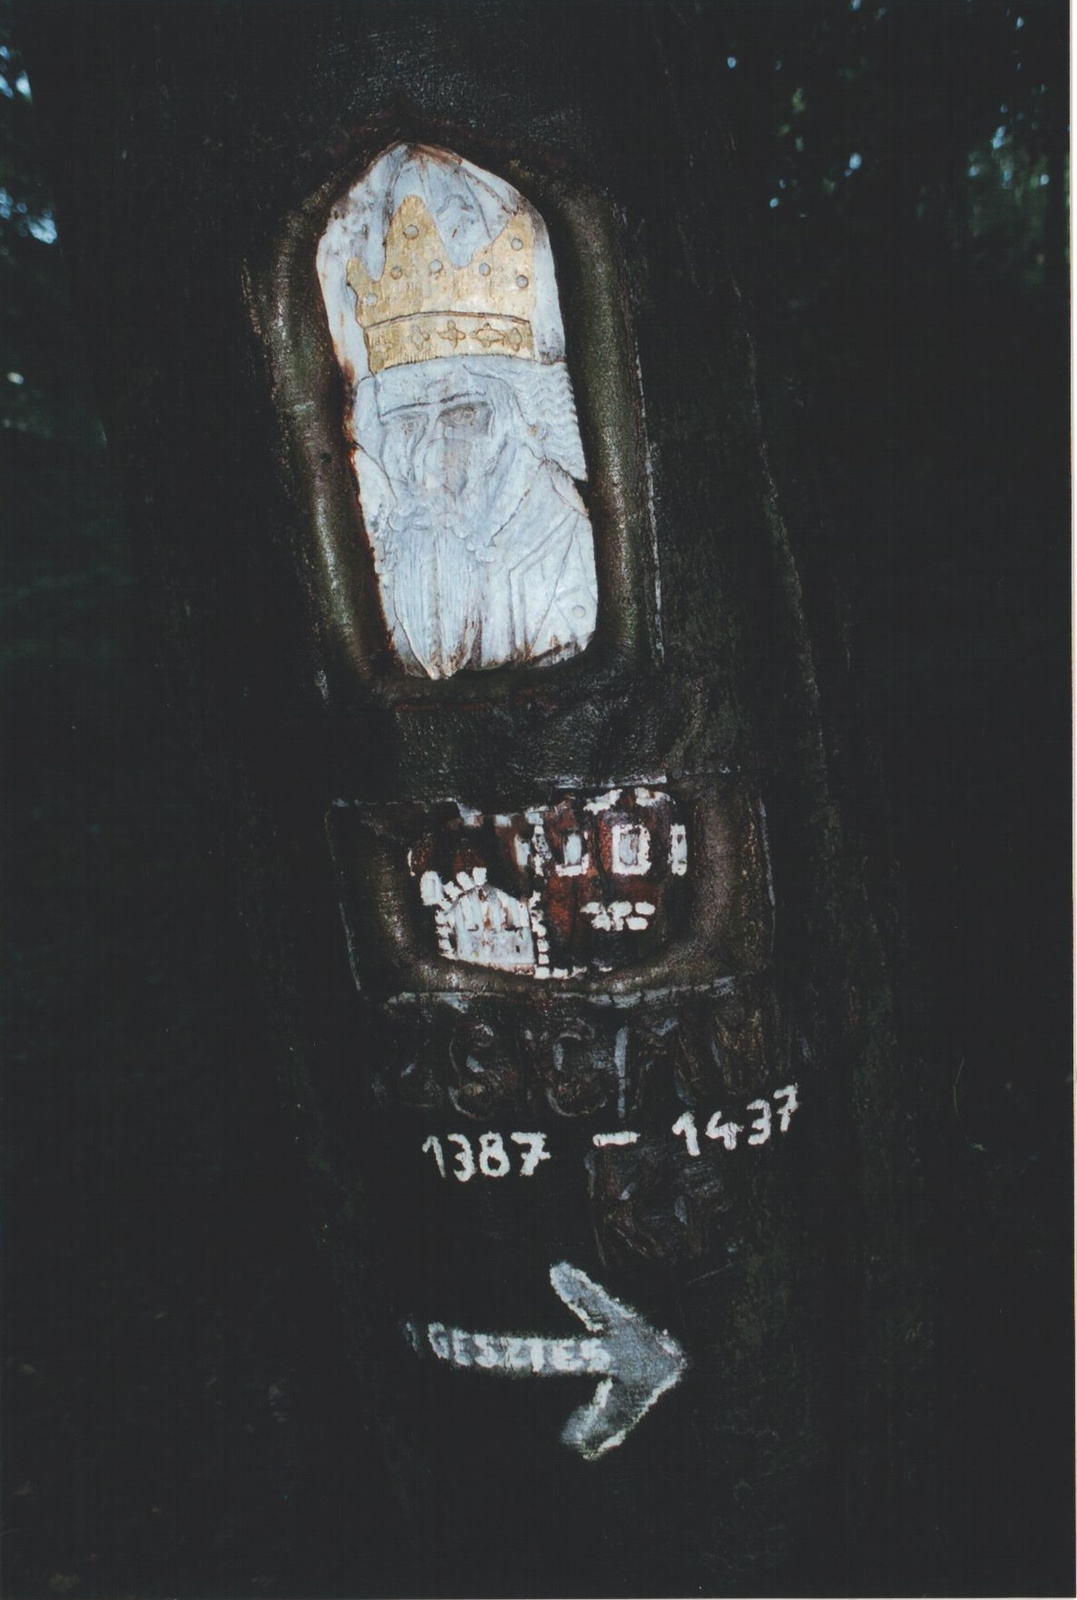 235 Zsigmond király faragott-festett képmása egy útszéli bükkfán